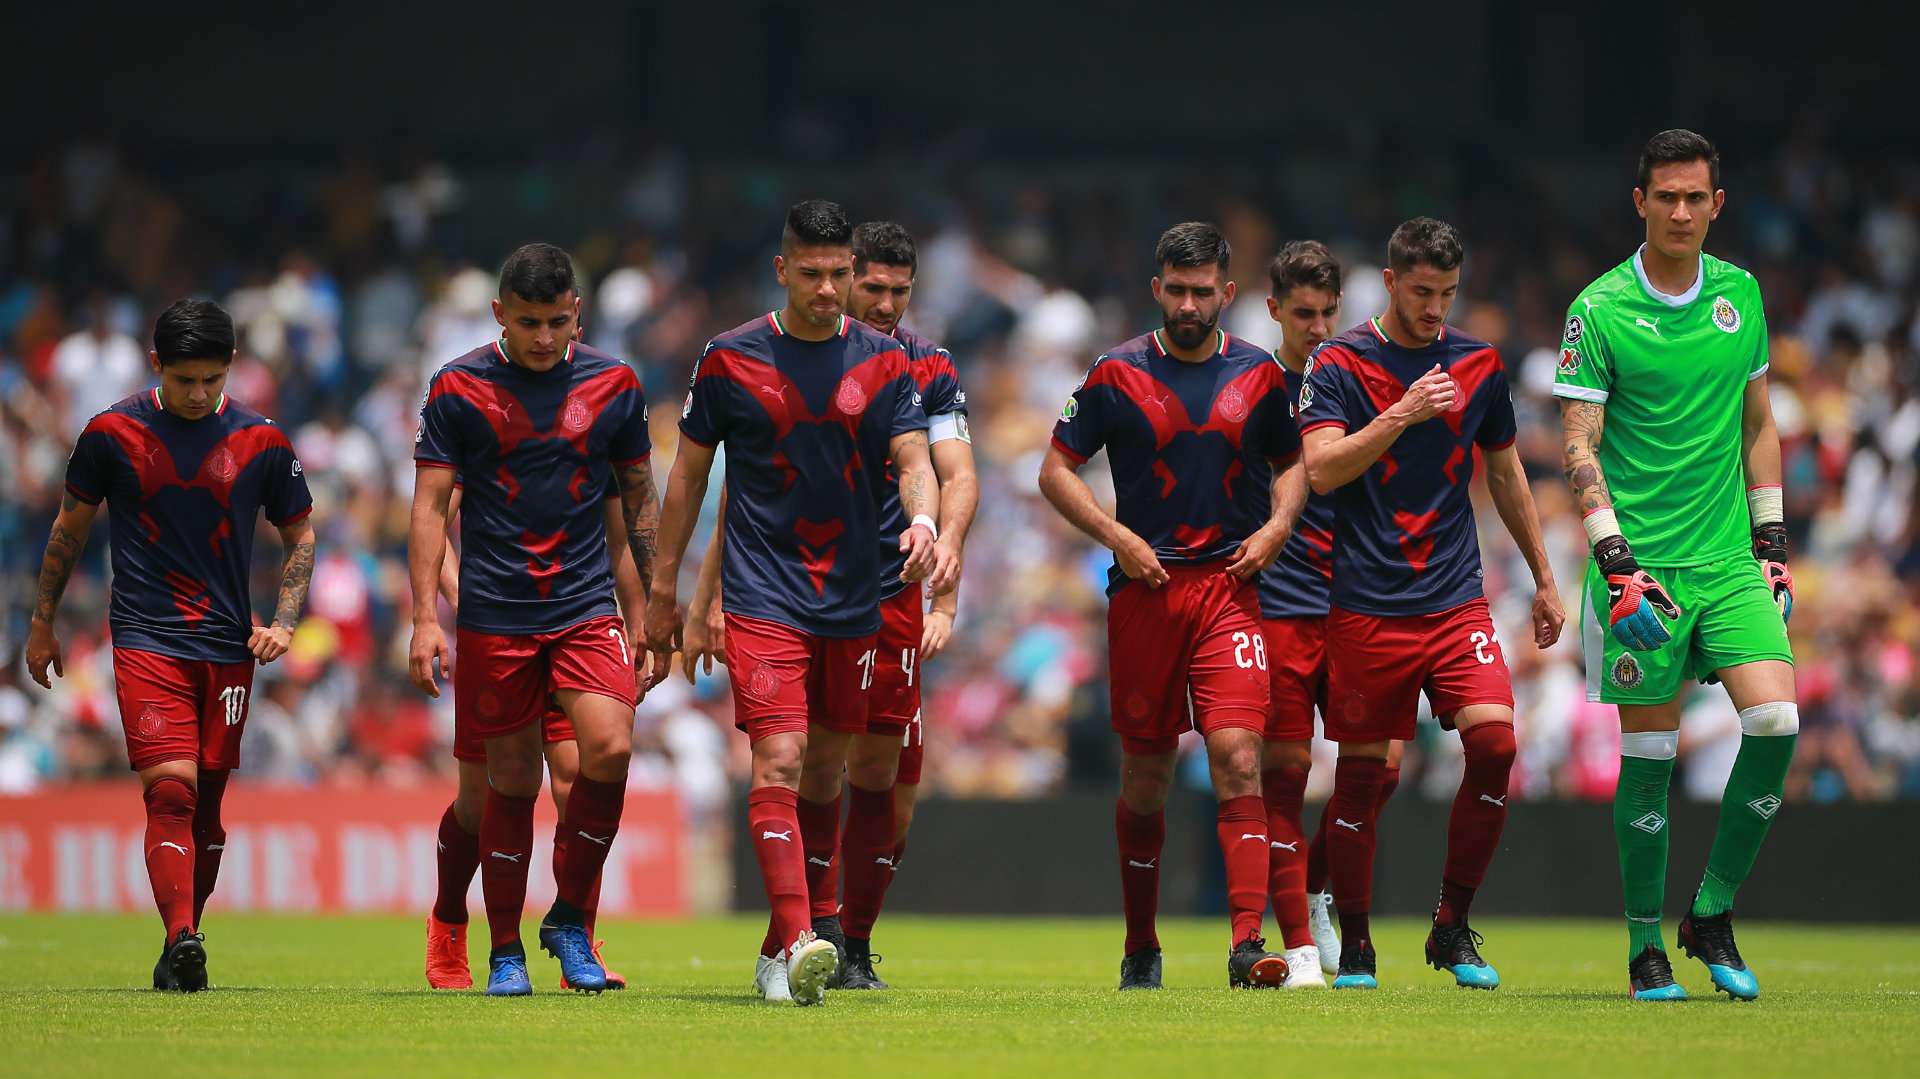 Chivas Clausura 2019 010319